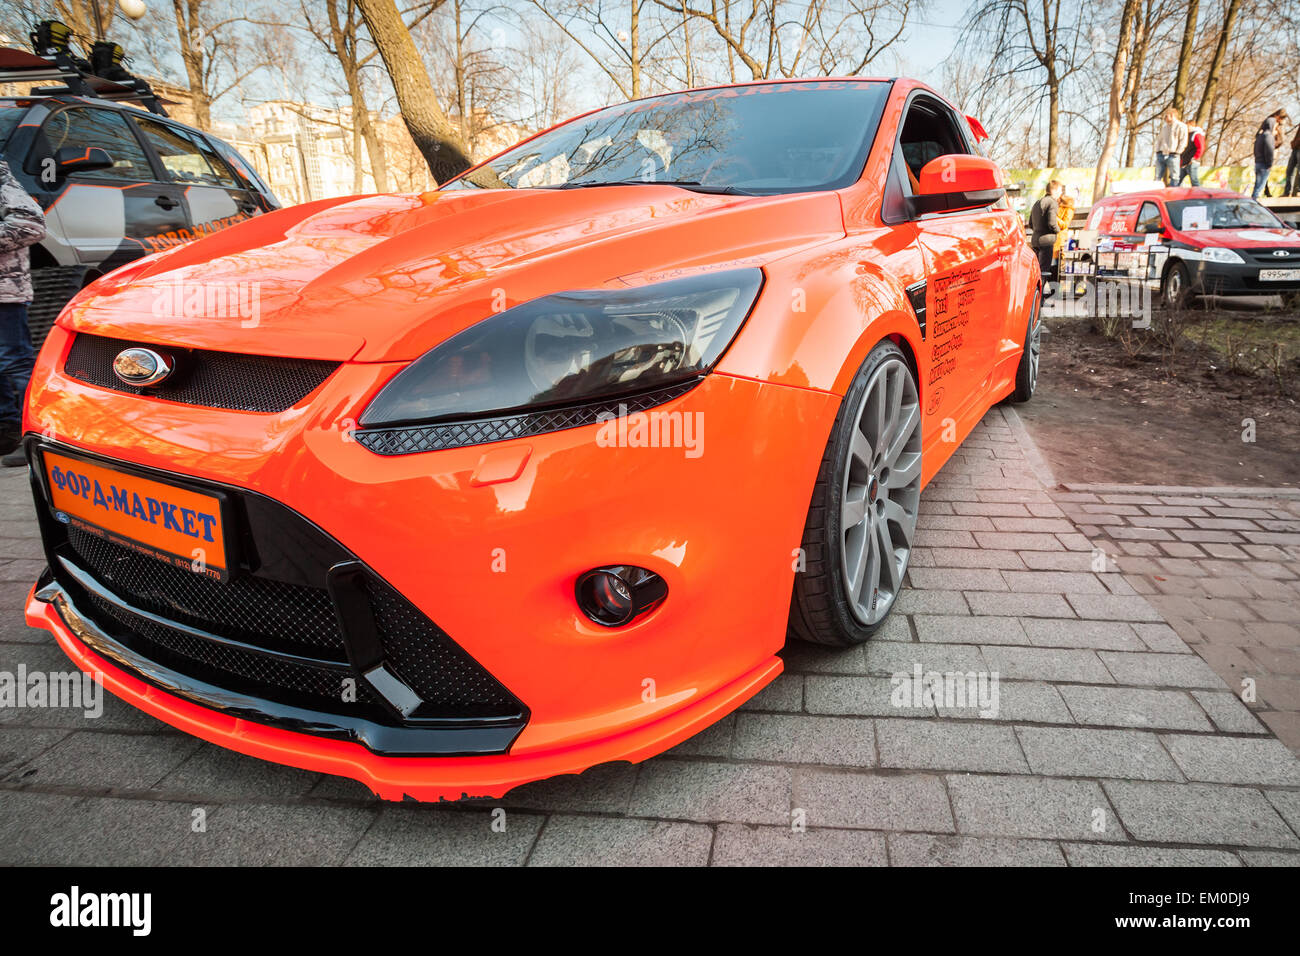 San Pietroburgo, Russia - 11 Aprile 2015: arancio luminoso in stile sportivo Ford focus auto parcheggiate sorge sulla strada. Ampio angolo cl Foto Stock